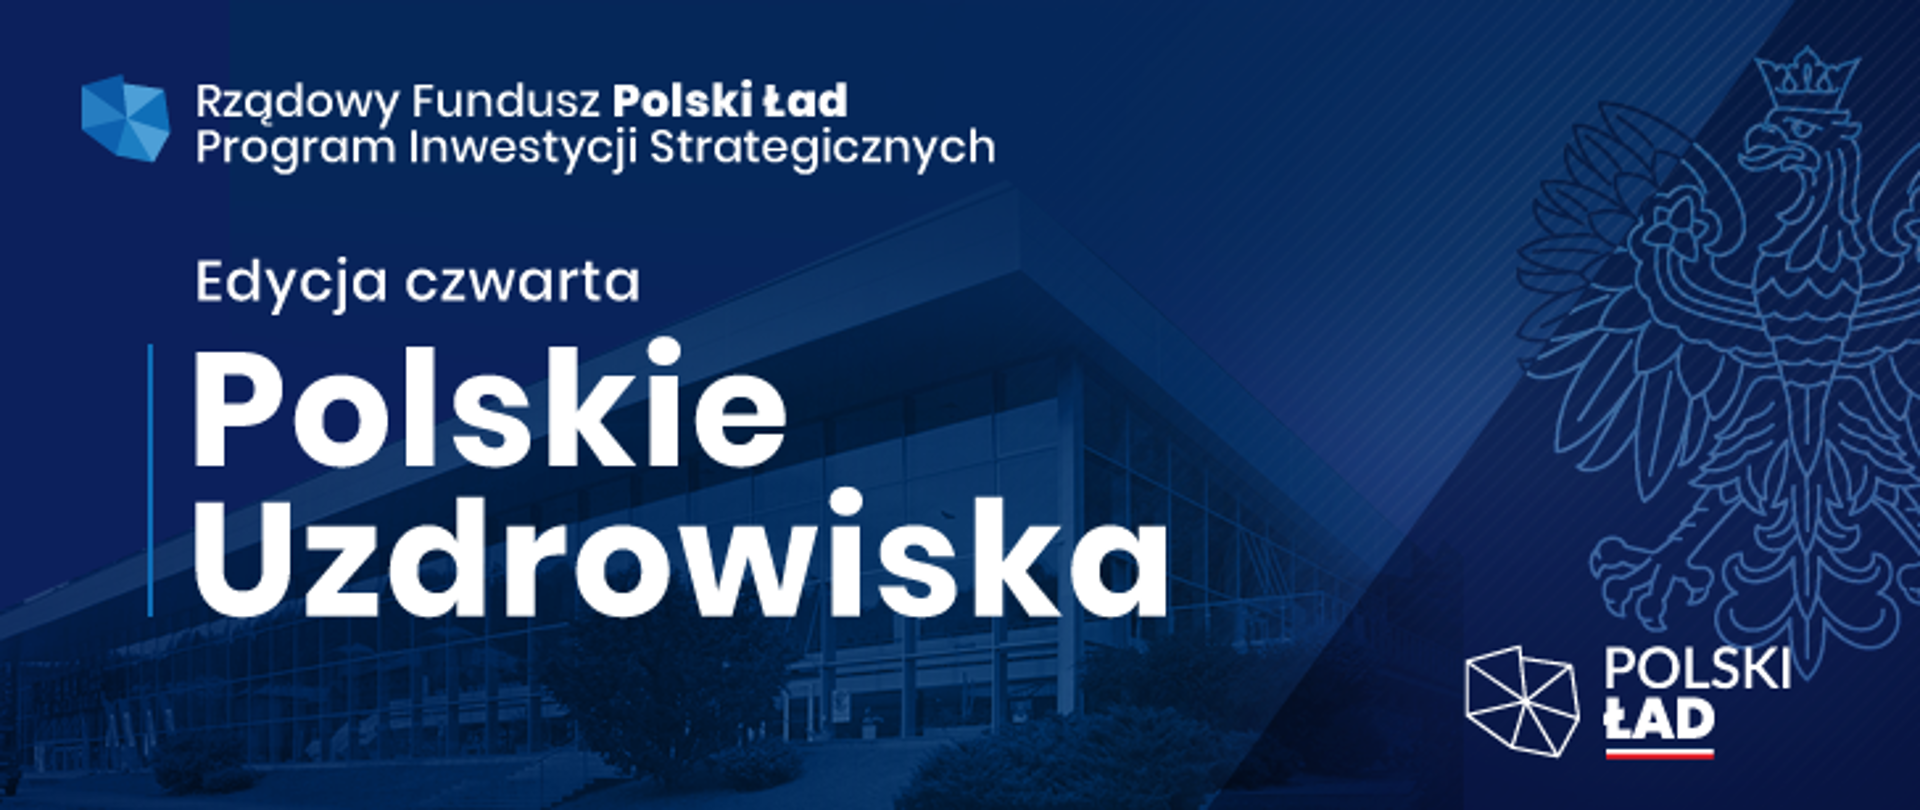 Rządowy Fundusz Polski Ład: Program Inwestycji Strategicznych - edycja czwarta - Polskie Uzdrowiska